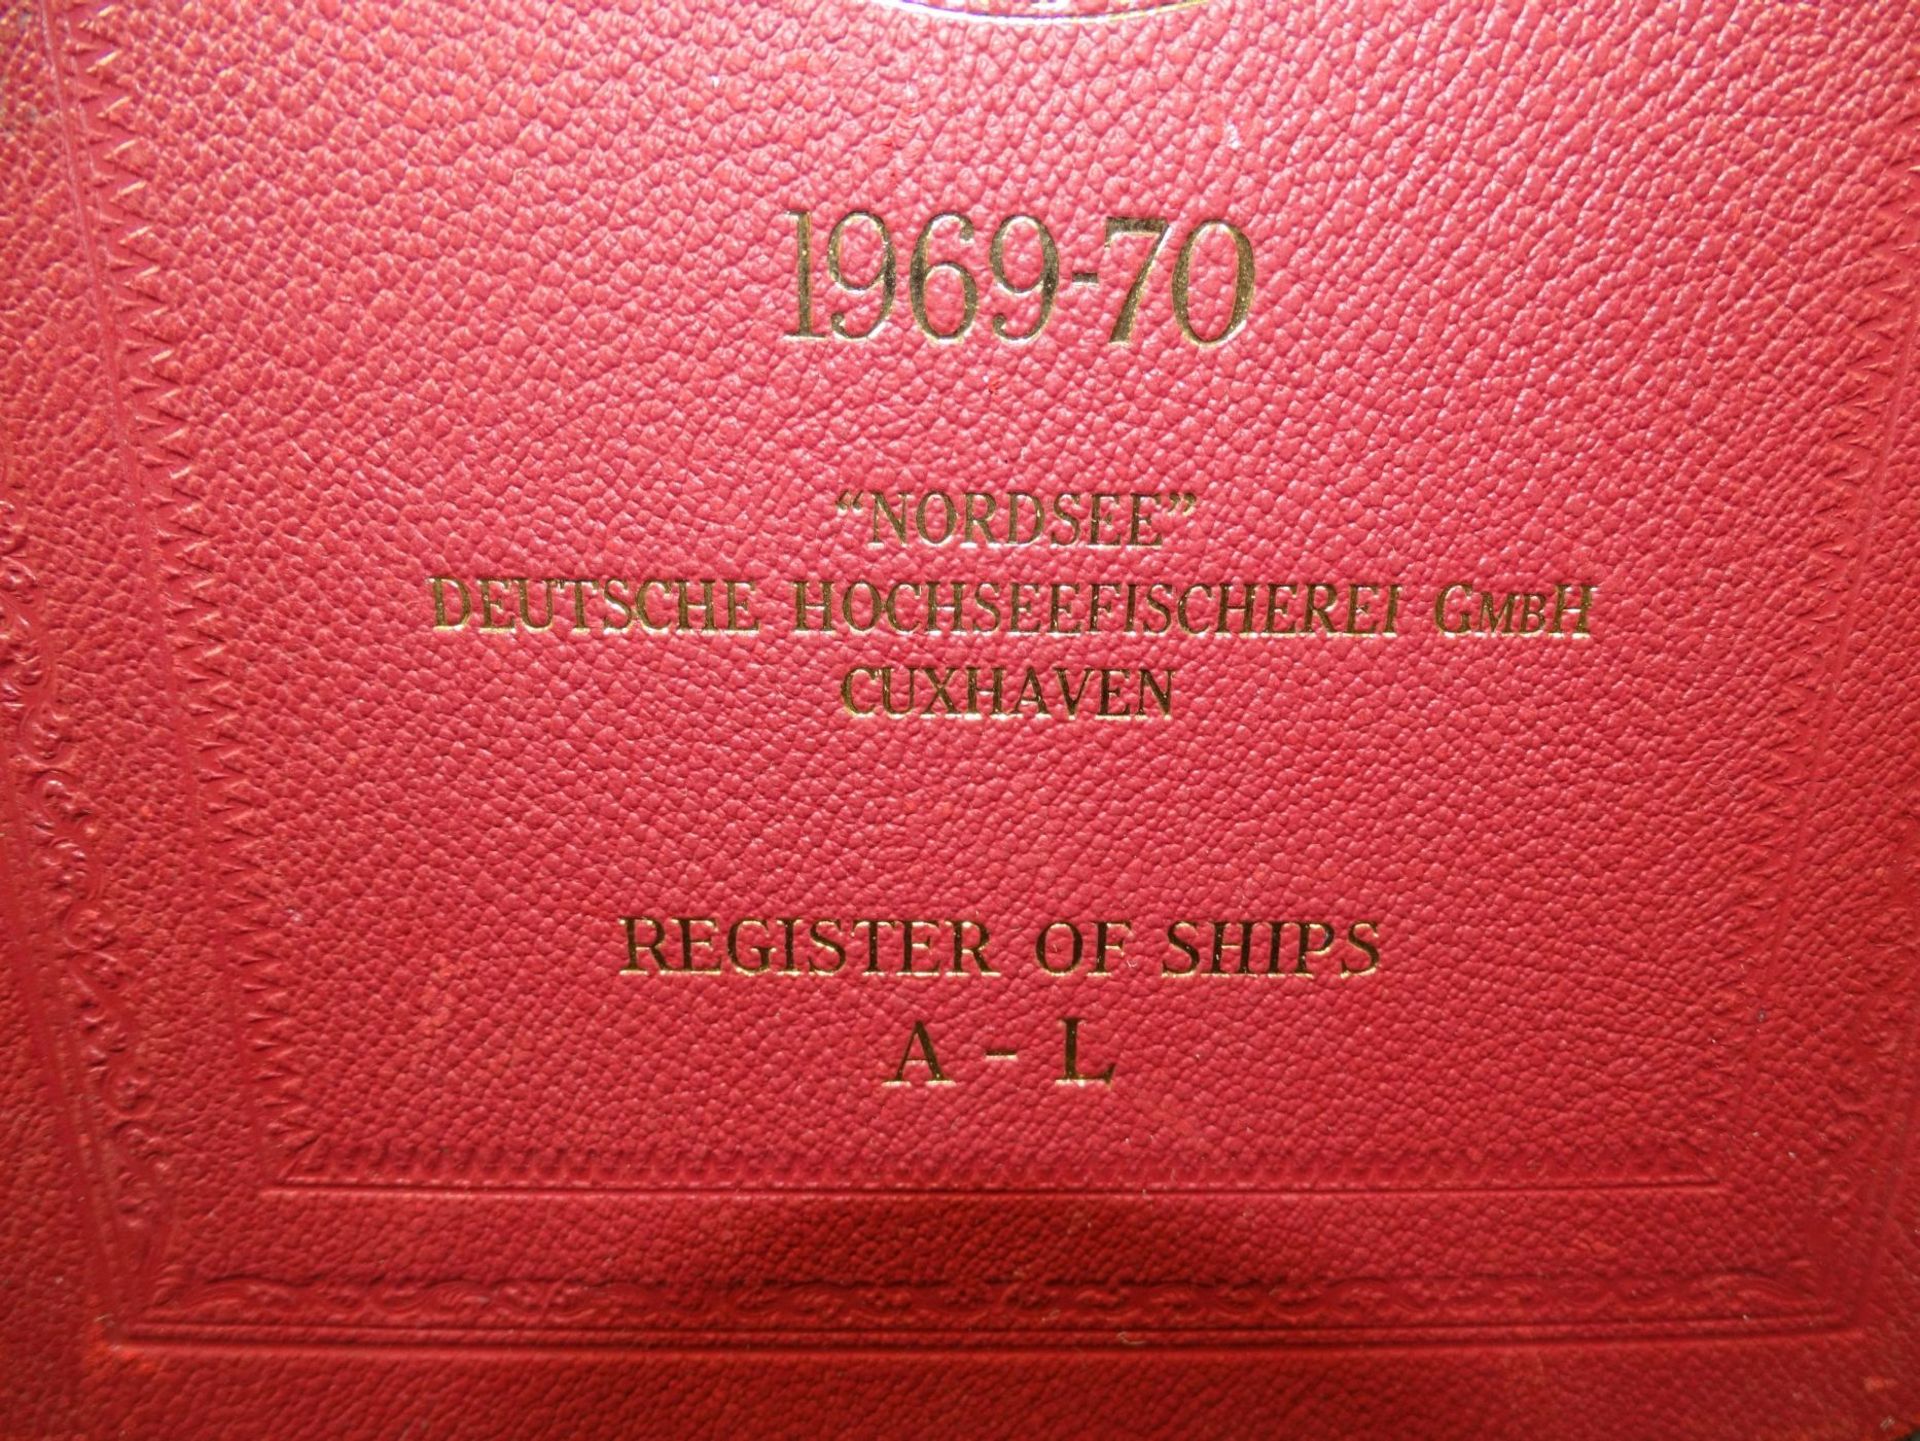 Register of Ships 1969/70, Aufdruck "Nordsee" Deutsche Hochseefischerei, 1 Bans A-L- - -22.61 % - Bild 2 aus 8